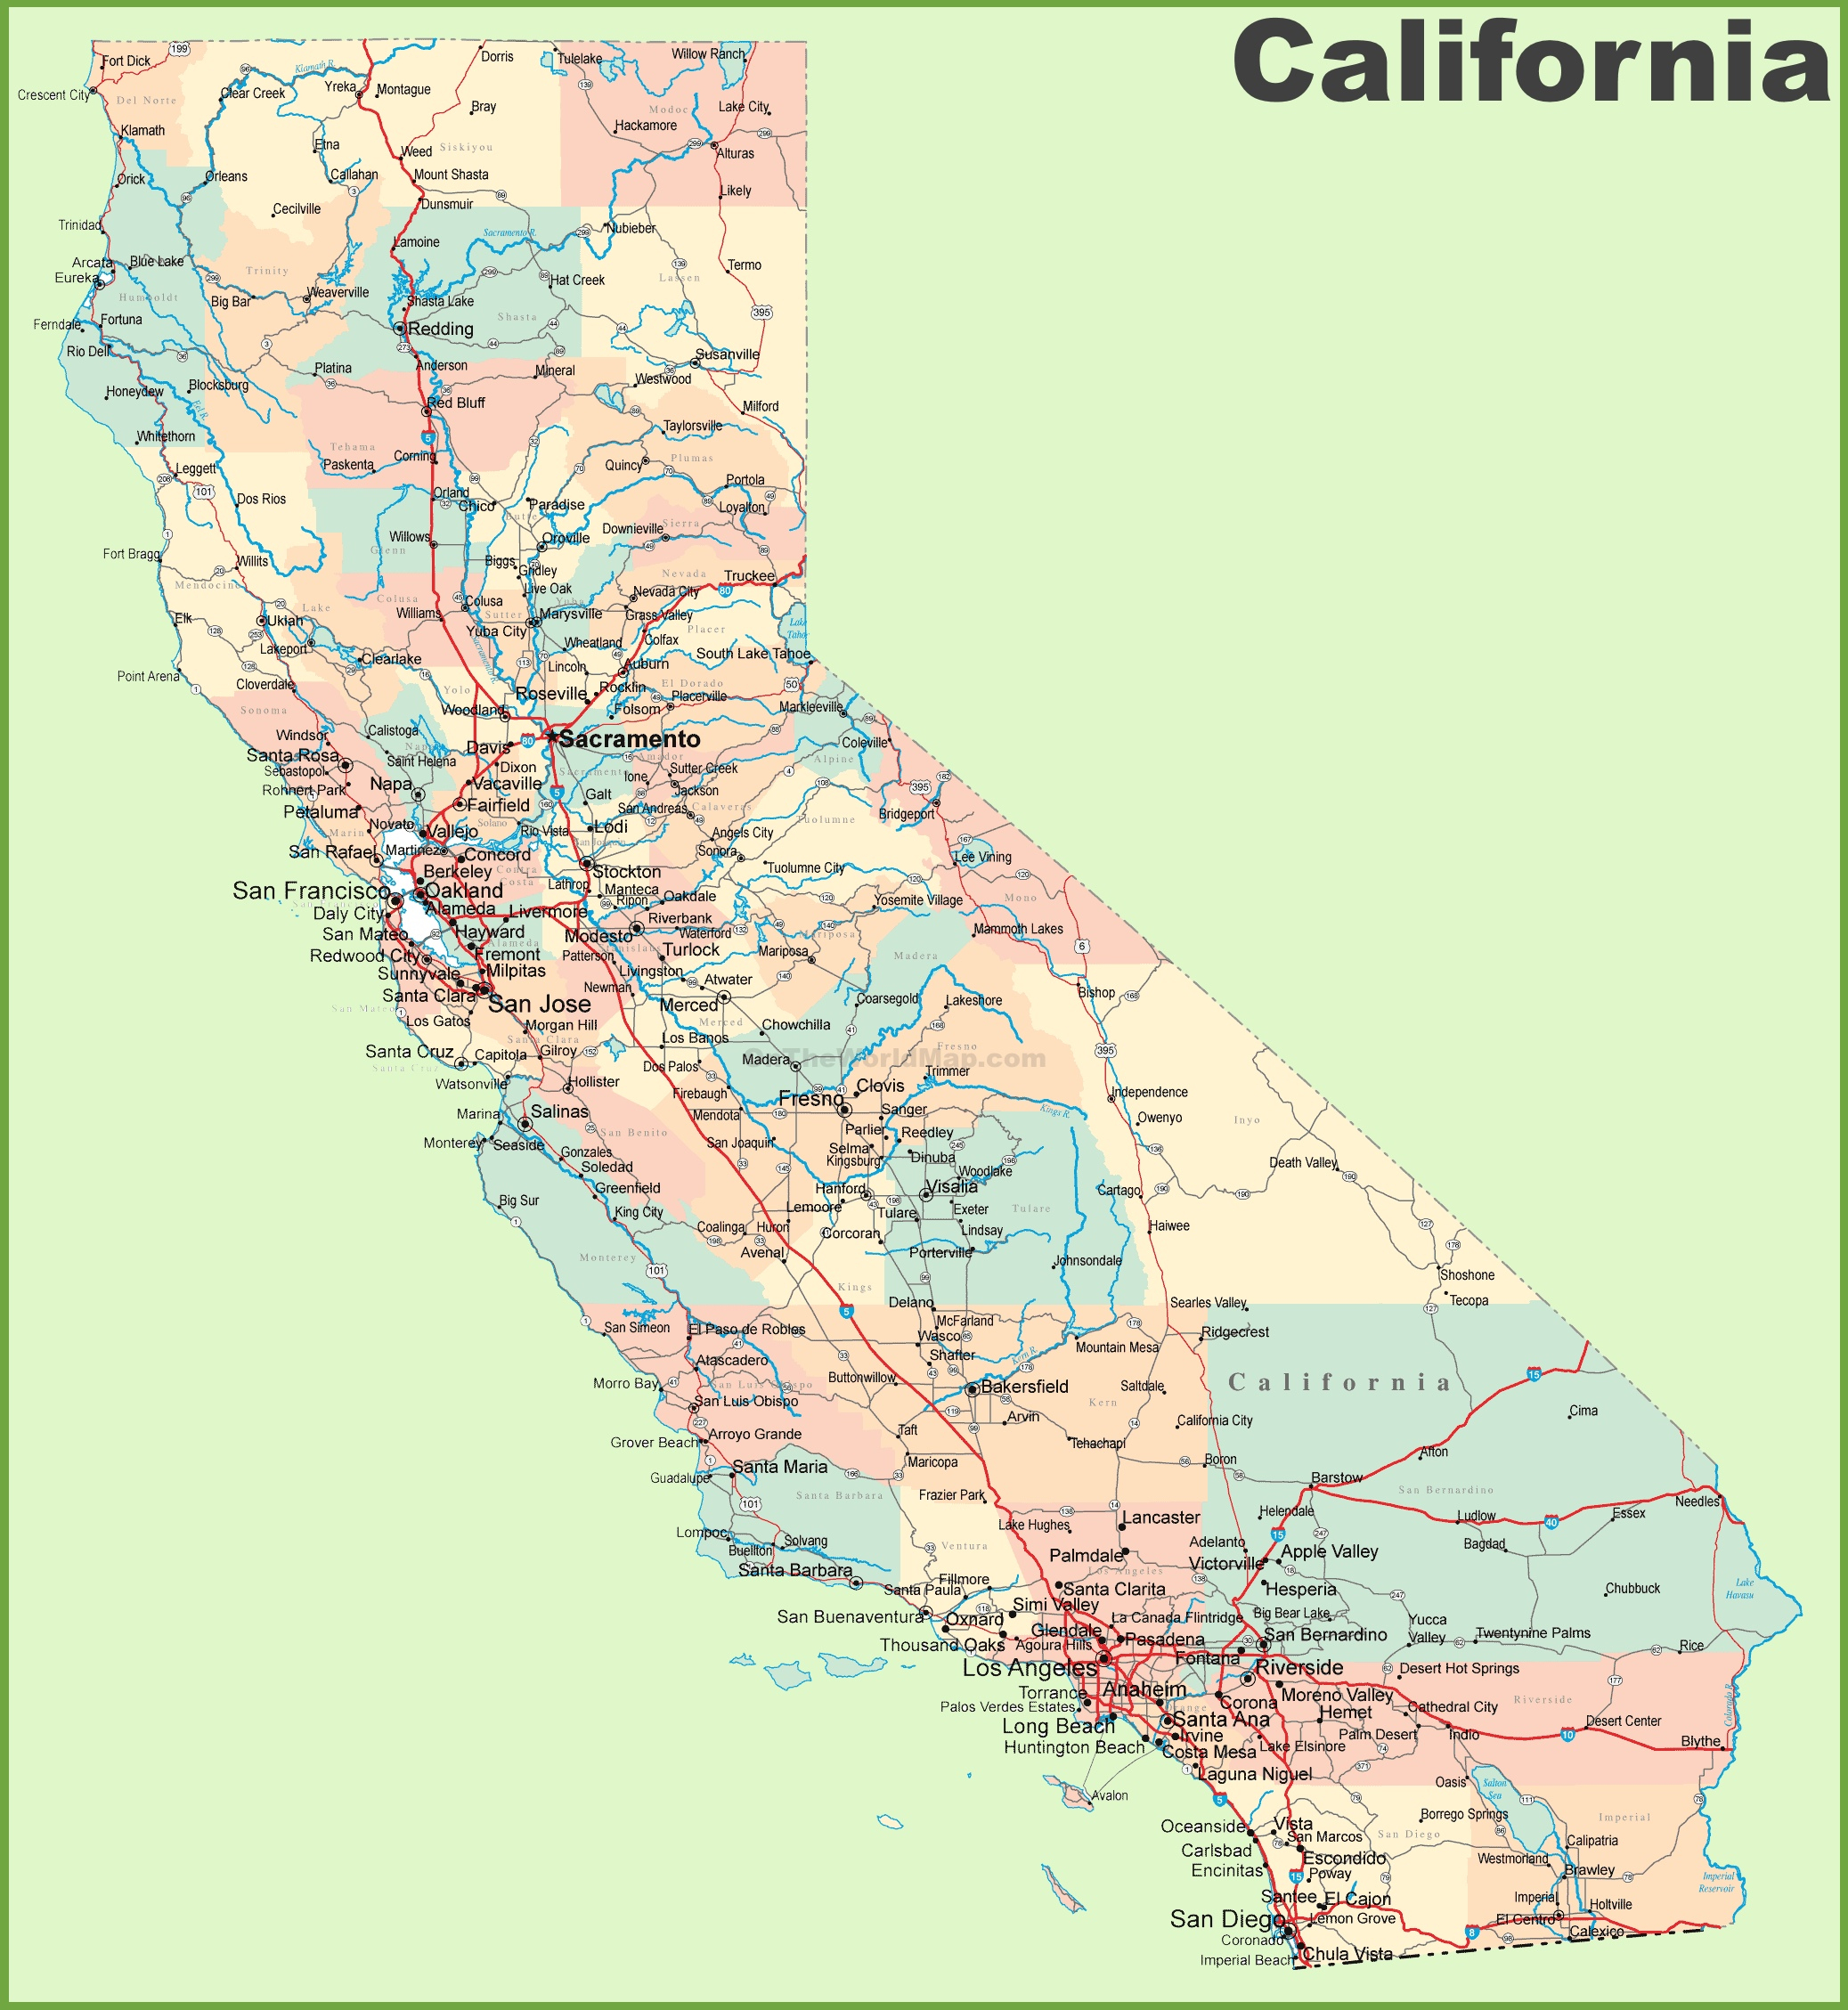 California Road Map - California State Road Map